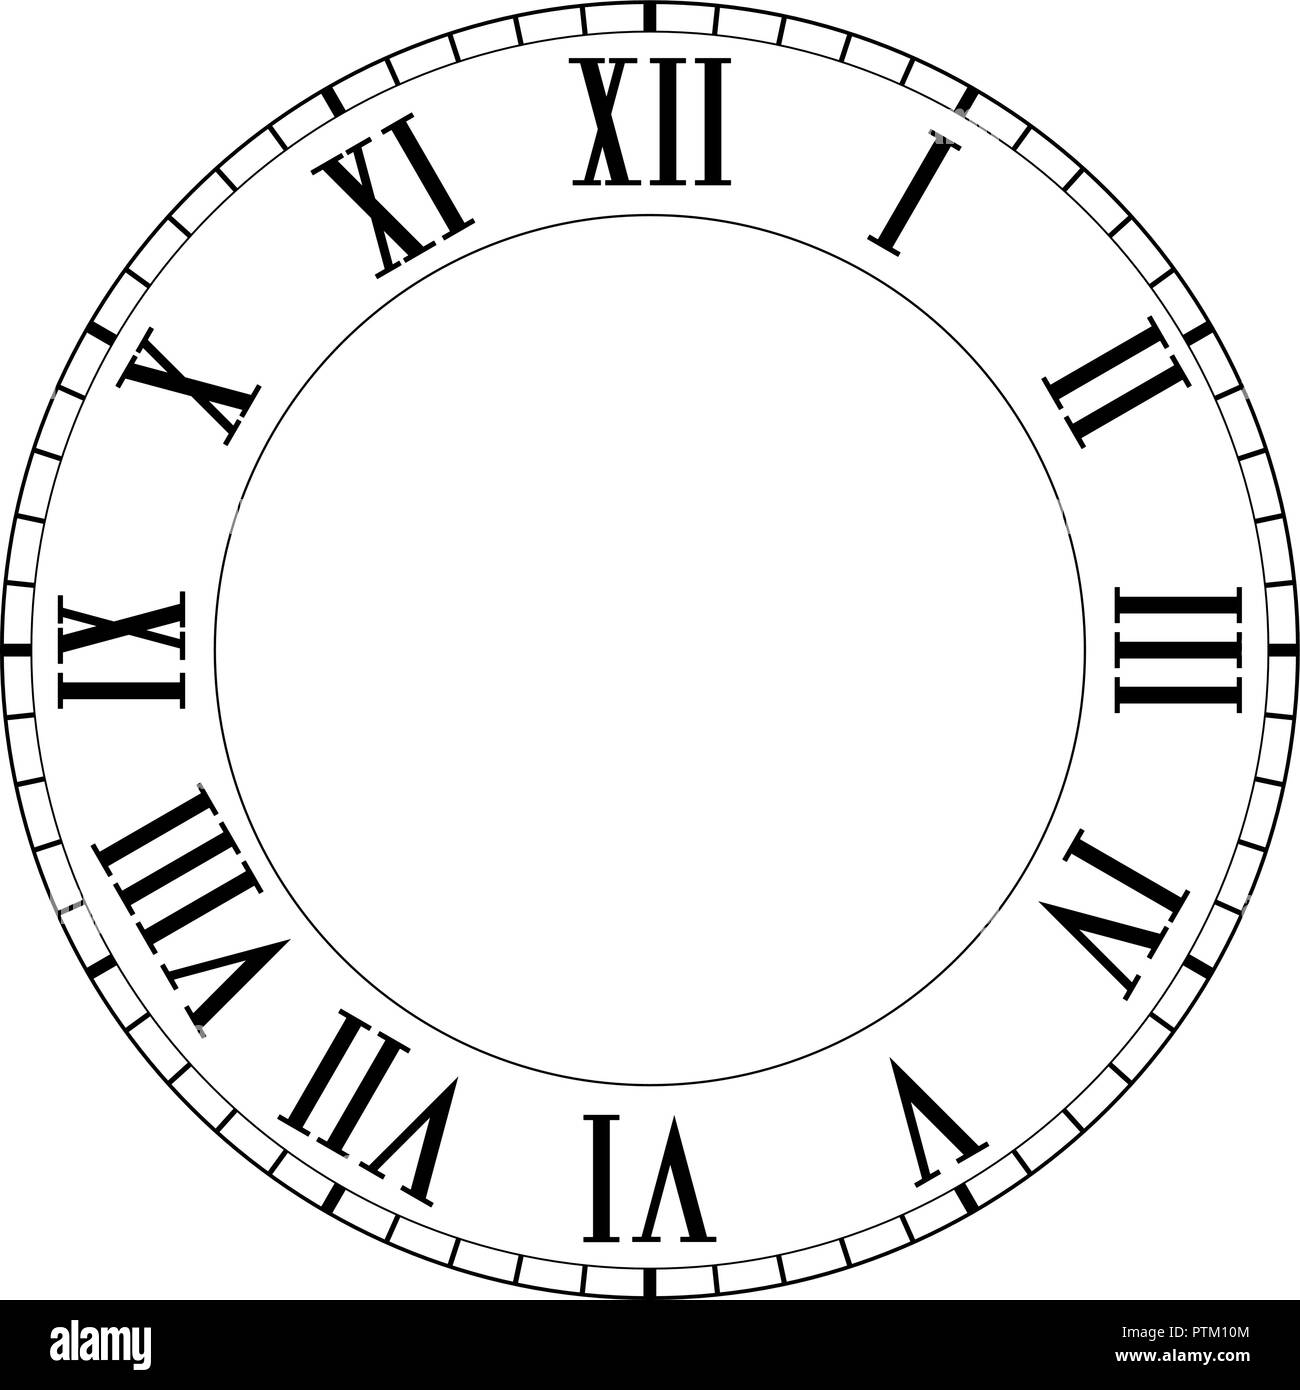 Horloge avec chiffres romains Image Vectorielle Stock - Alamy